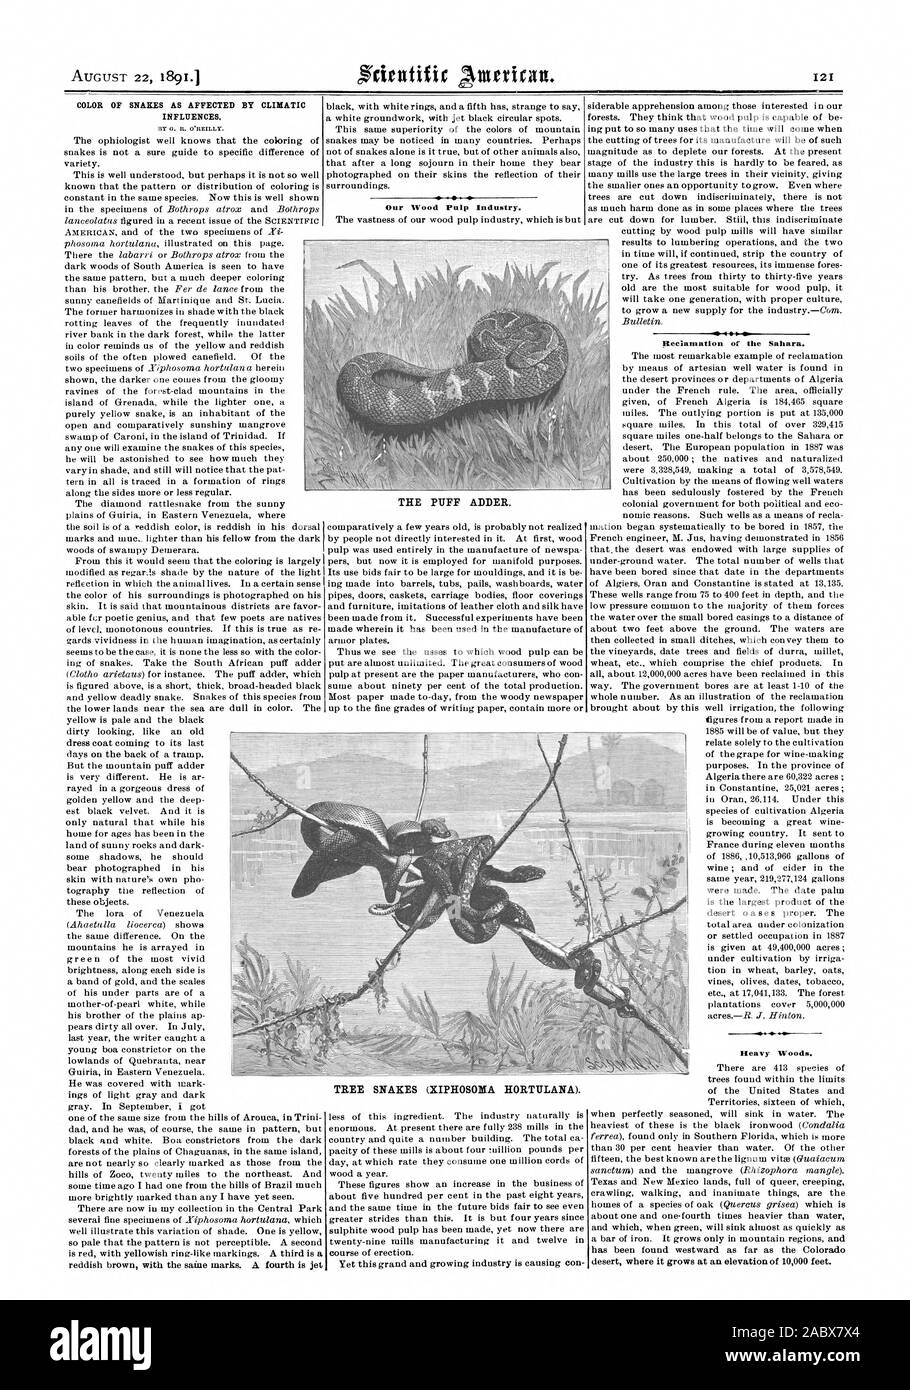 Colore dei serpenti come influenzata dalle influenze climatiche. Da O. R. o'reilly. La nostra pasta di legno Industria. TREE serpenti (XIPHOSONA HORTULANA). VS '4 I. Bonifica del Sahara. Legni pesanti. La spugnetta sommatore., Scientific American, 1891-08-22 Foto Stock